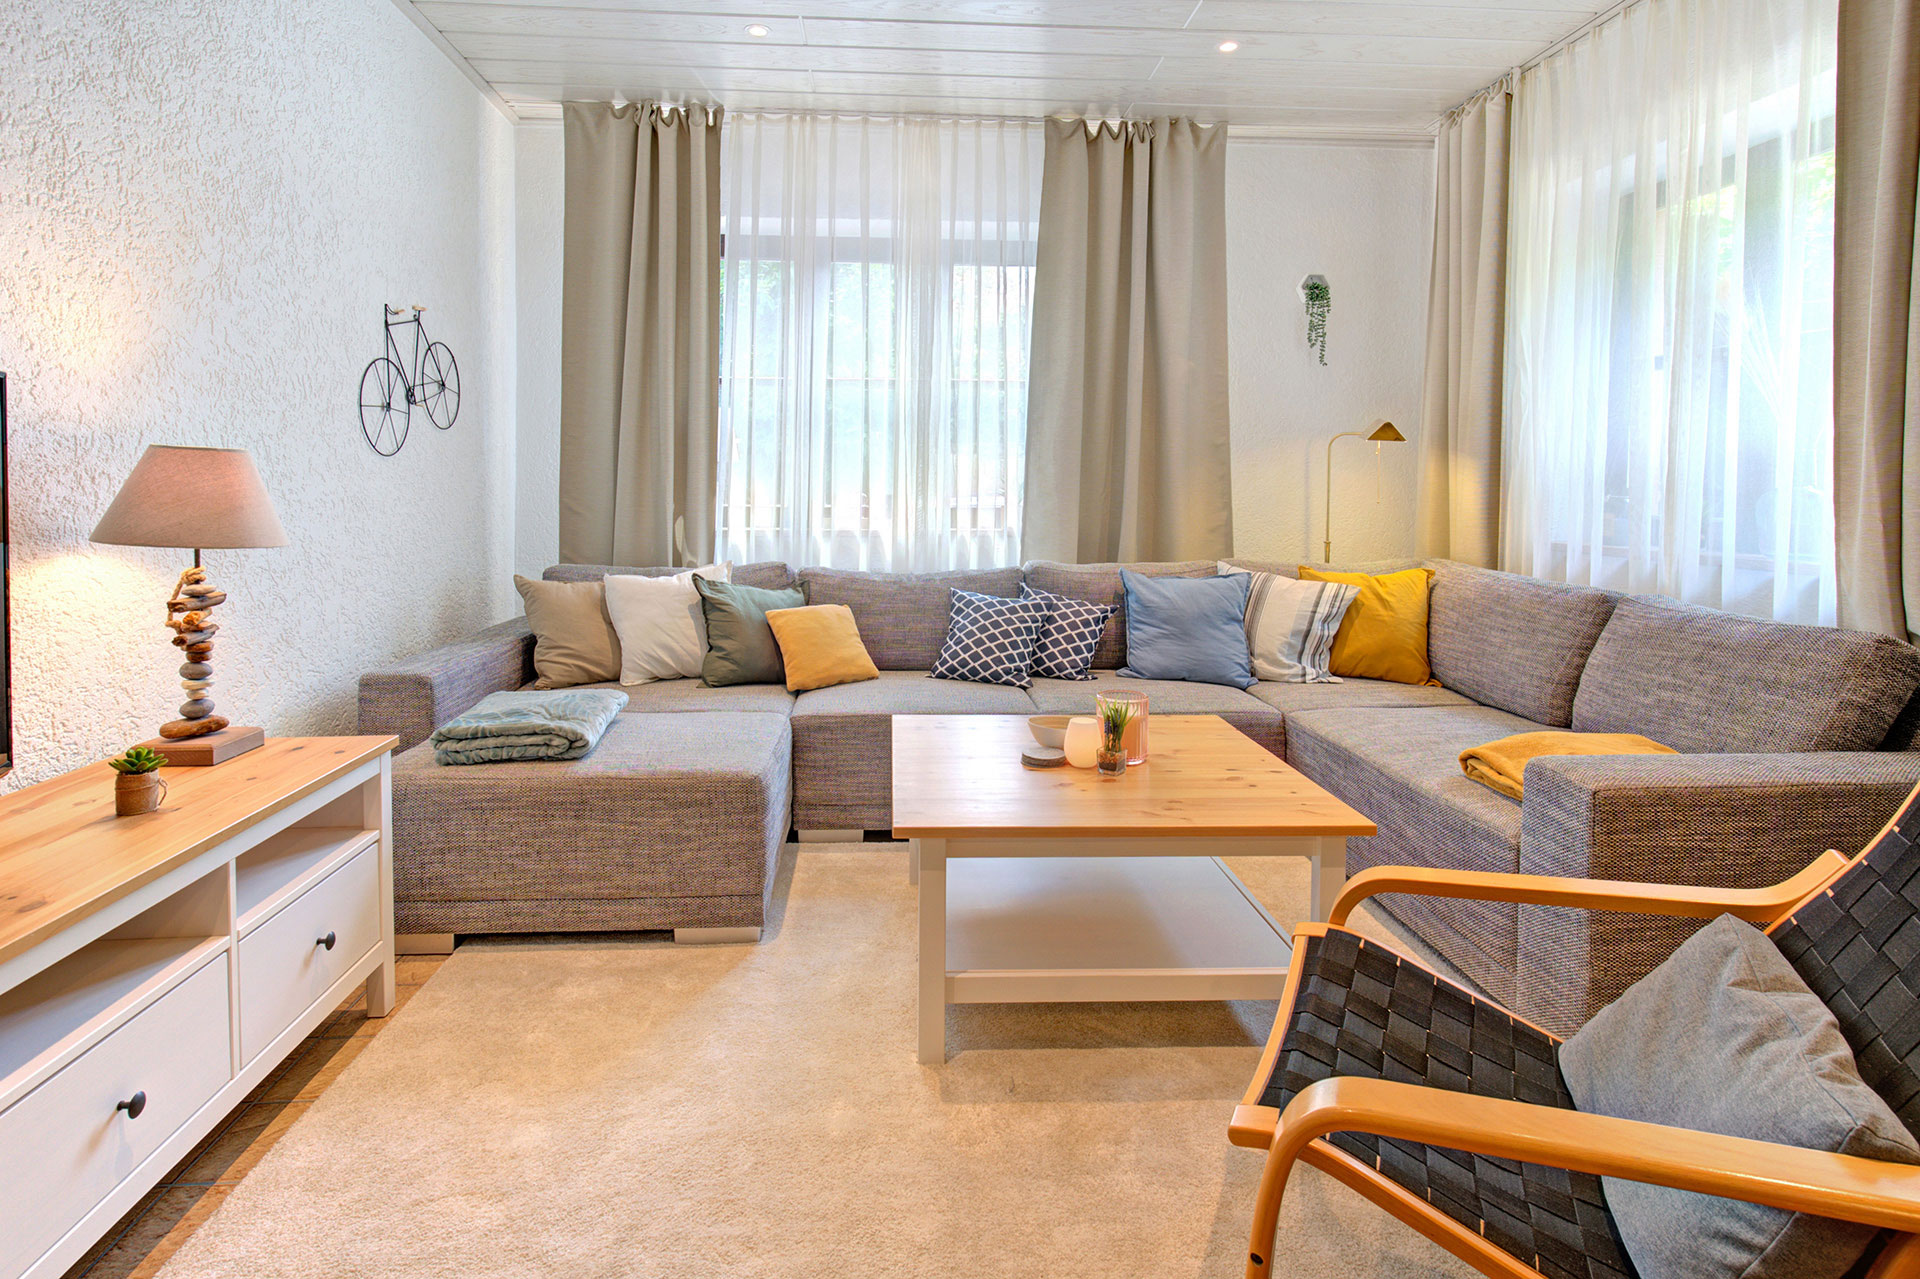 wohnraum mit grossem sofa von ferienhaus professionell fotografiert